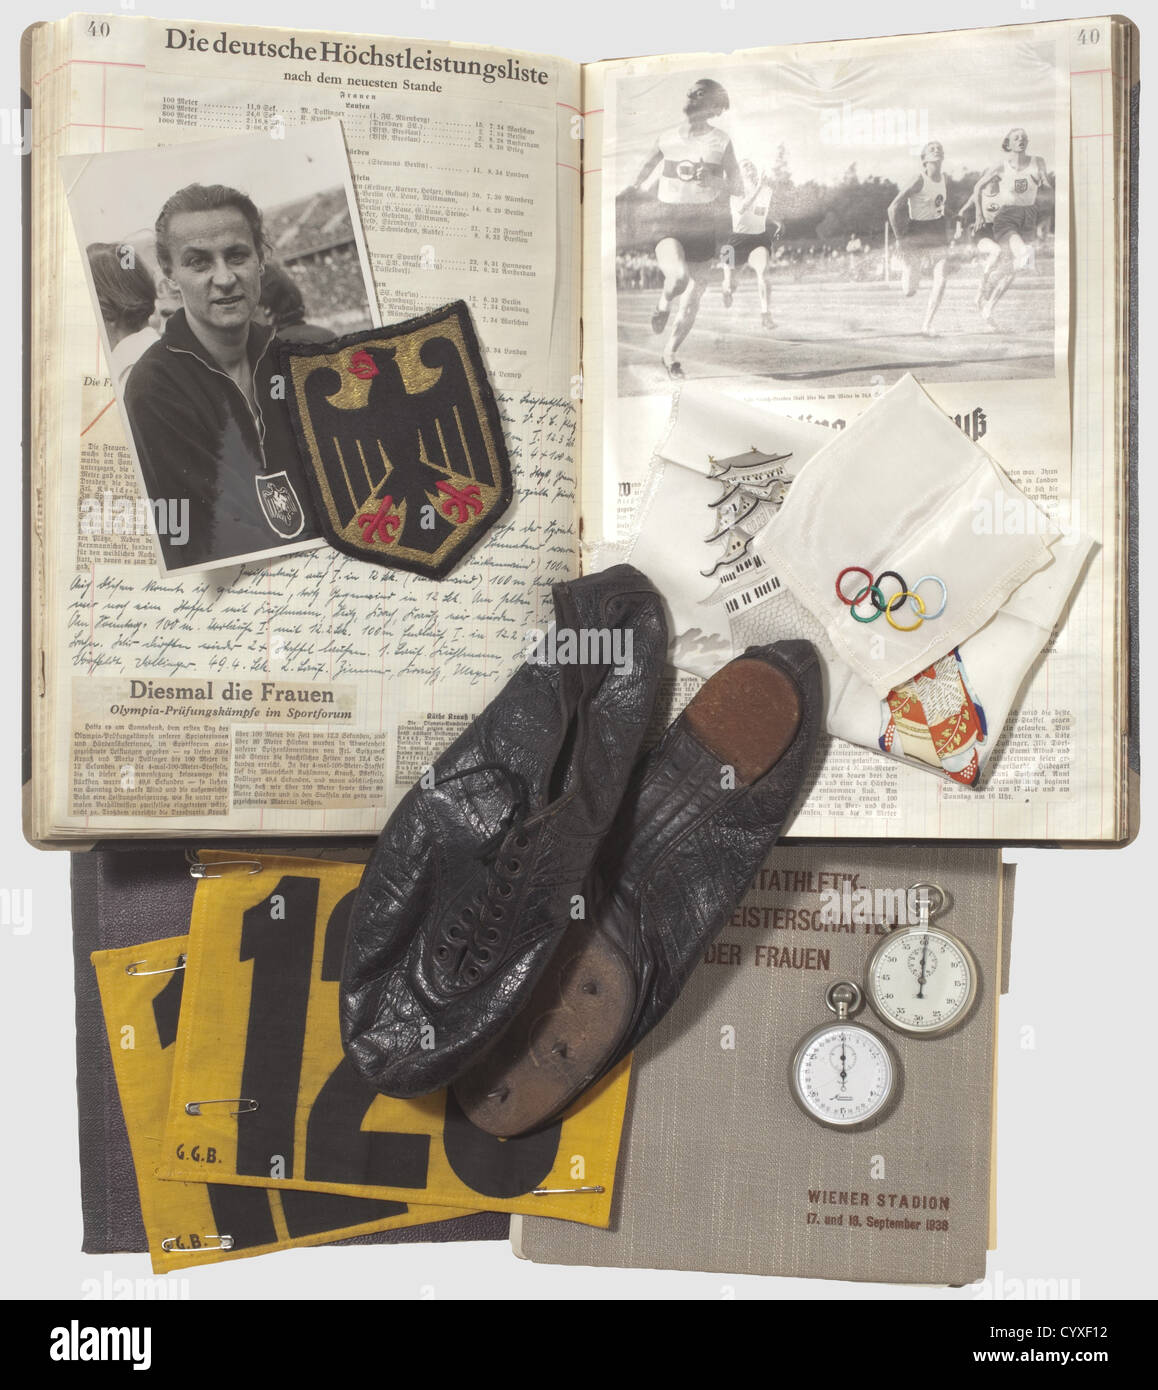 Käthe Krauss(1906 - 1970),coupures de presse,pointes,numéros de départ,chronomètres deux volumes de coupures de presse sur ses succès sportifs de 1929 - 1935 ainsi qu'un volume couvrant les 1ers championnats européens d'athlétisme pour les femmes qui se sont tenus au stade de Vienne en 1938 (programme,participants,compétitions). Un chronomètre a l'envers gravé 'A.f.L. Dresden', un autre est gravé avec 'LVP 110'. Une paire de pointes déclarées par Käthe Krauss dans une conversation avec l'expéditeur comme ayant été utilisées en 1936 est incluse. De plus, deux de démarrage sont engourdis, droits supplémentaires-Clearences-non disponible Banque D'Images